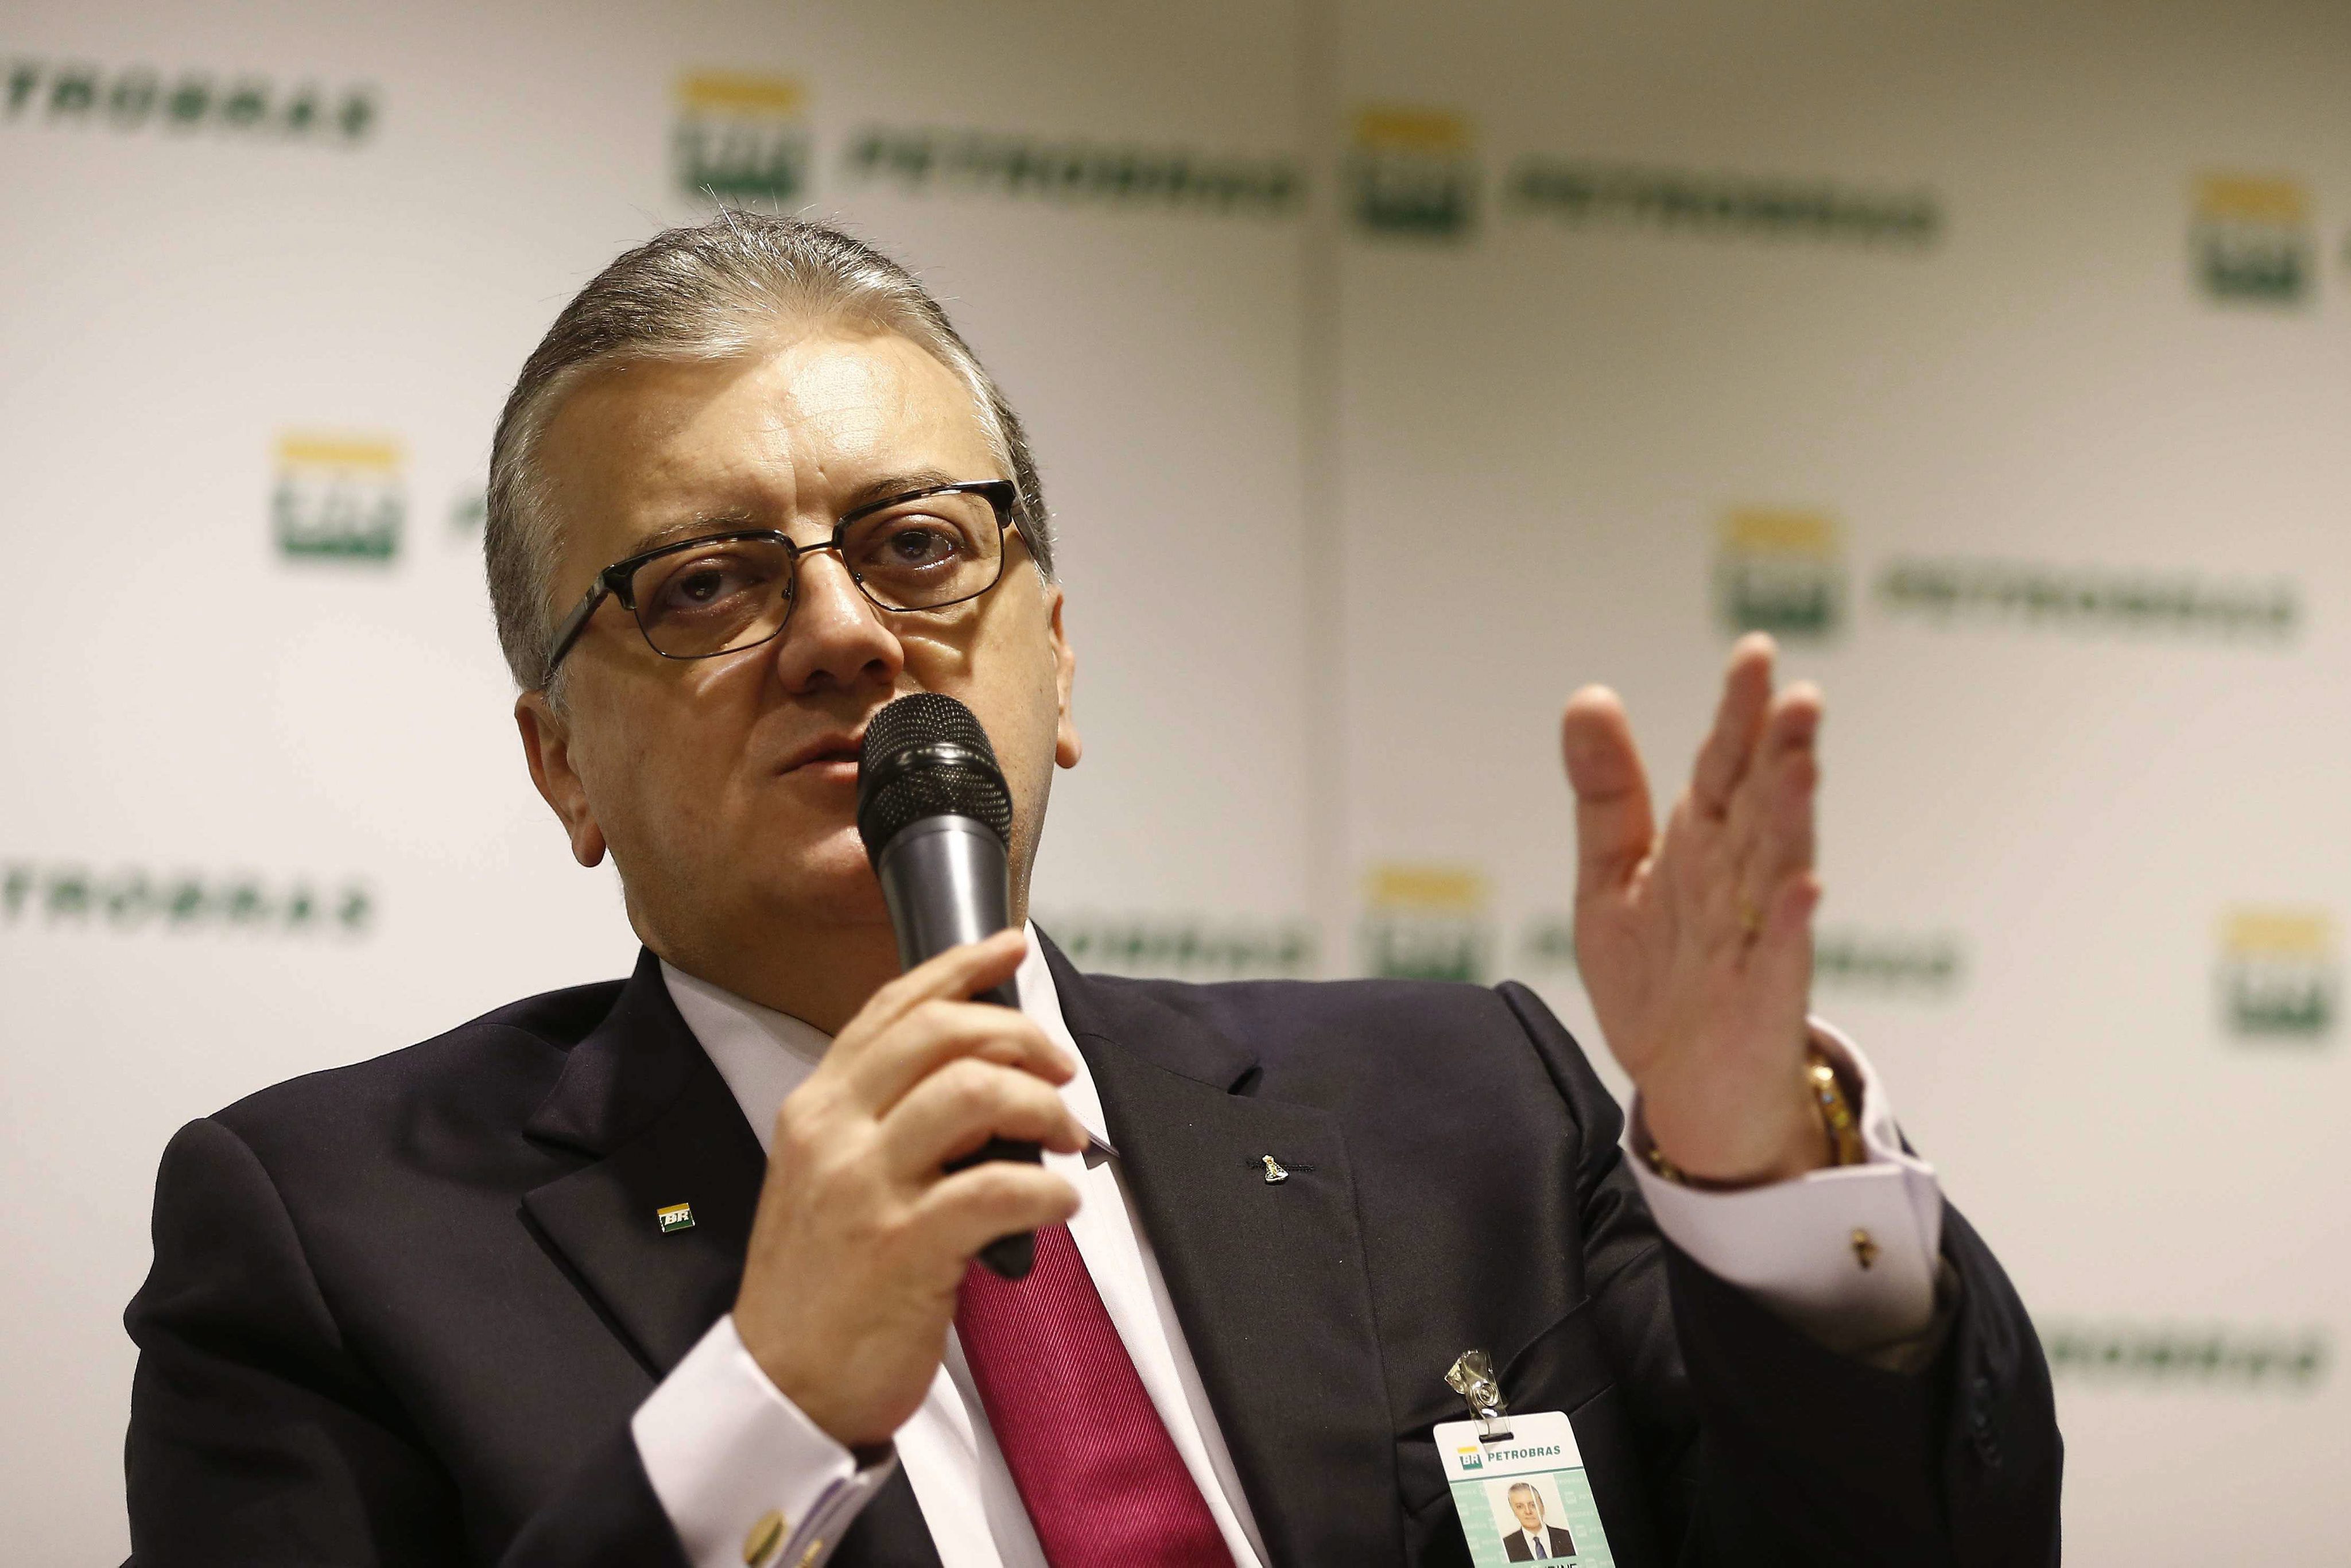 Ex-presidente da Petrobras condenado a 11 anos de prisão por corrupção